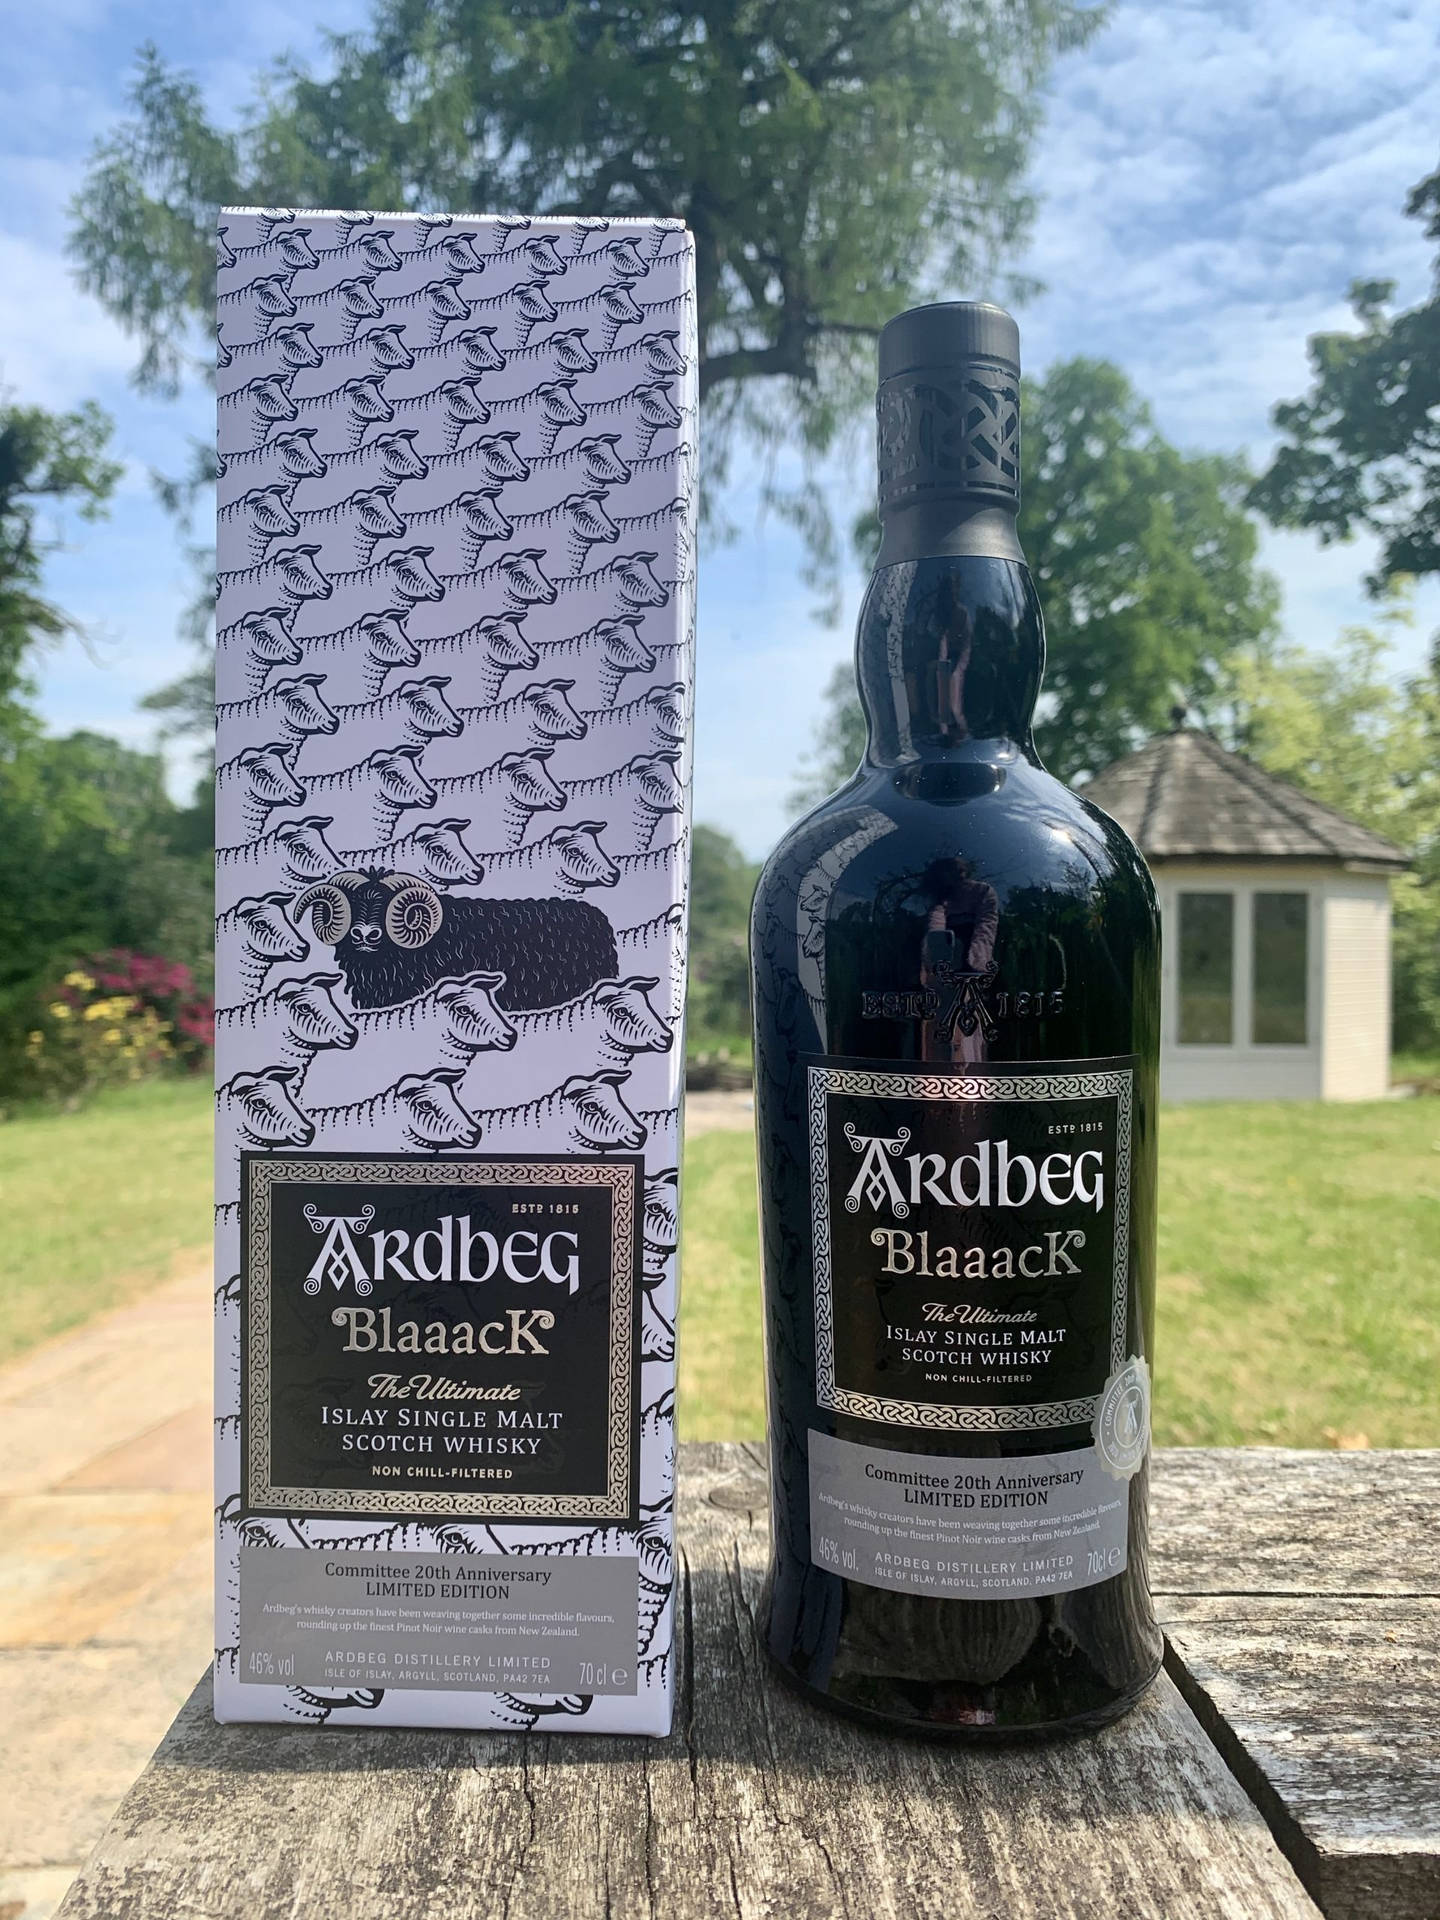 Ardbeg Blaaack Whisky Bottle And Box In Garden Wallpaper